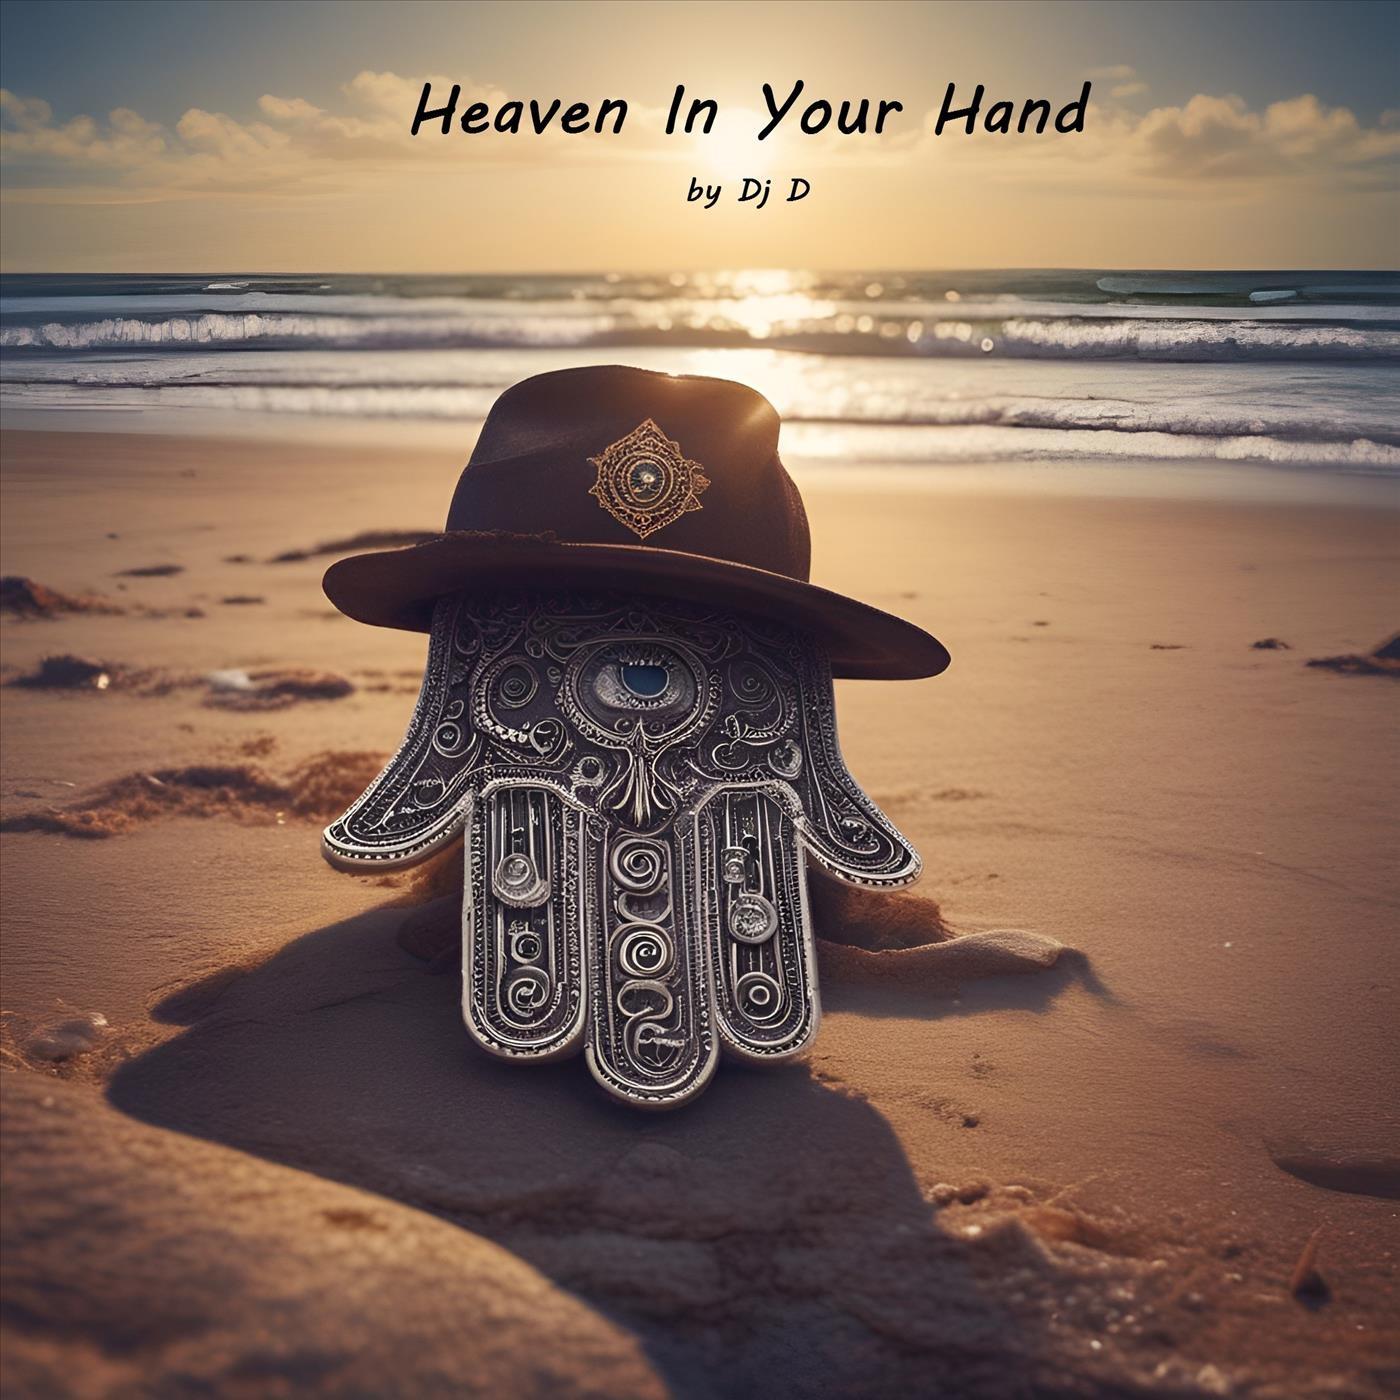 DJ D - Heaven in Your Hand (Instrumental)